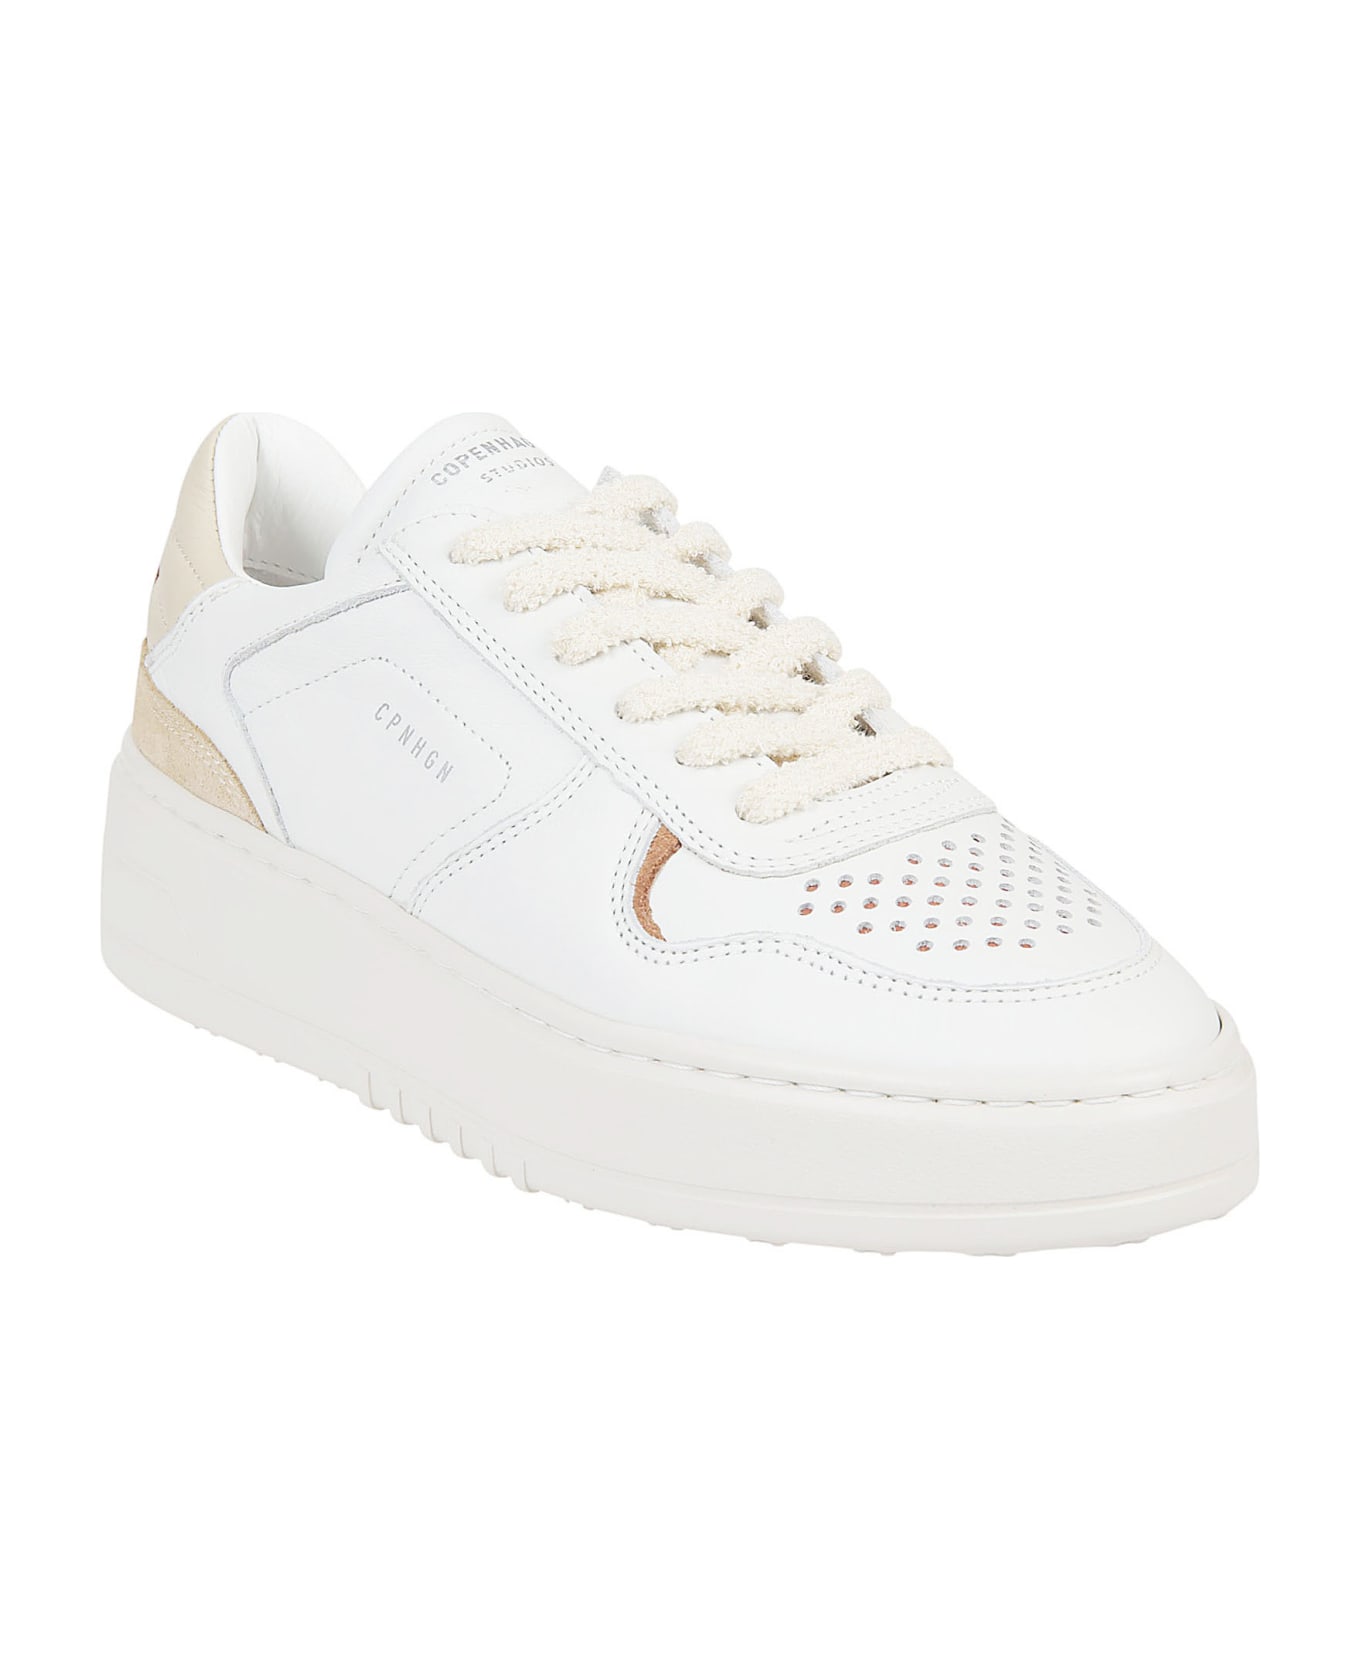 Copenhagen Studios Flat Shoes White - White